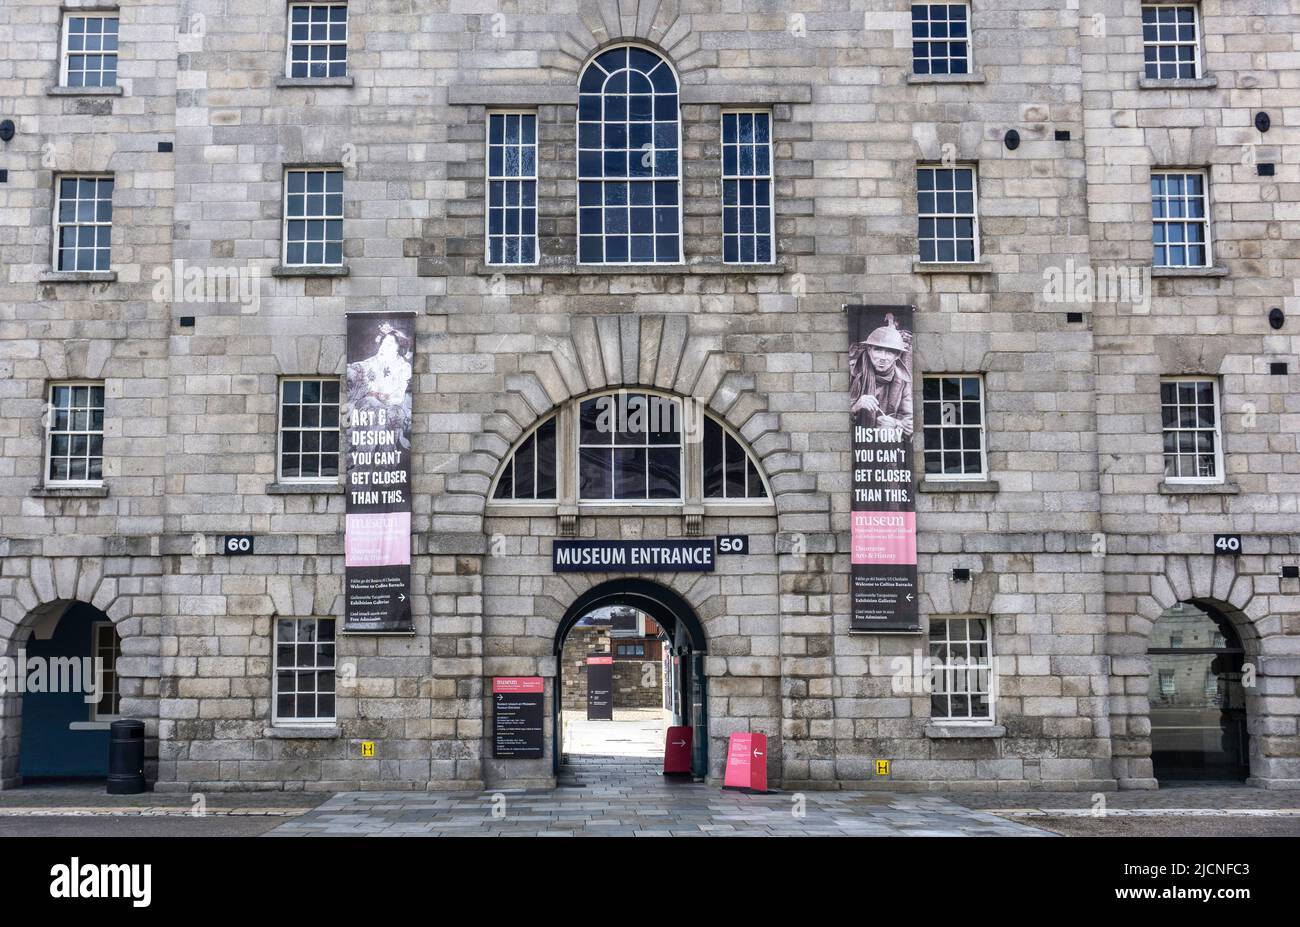 Musée Collins Barracks, dédié à l'histoire de l'Irlande et aux arts décoratifs. Une branche du Musée national d'Irlande, Arbour Hill, Dublin. Banque D'Images